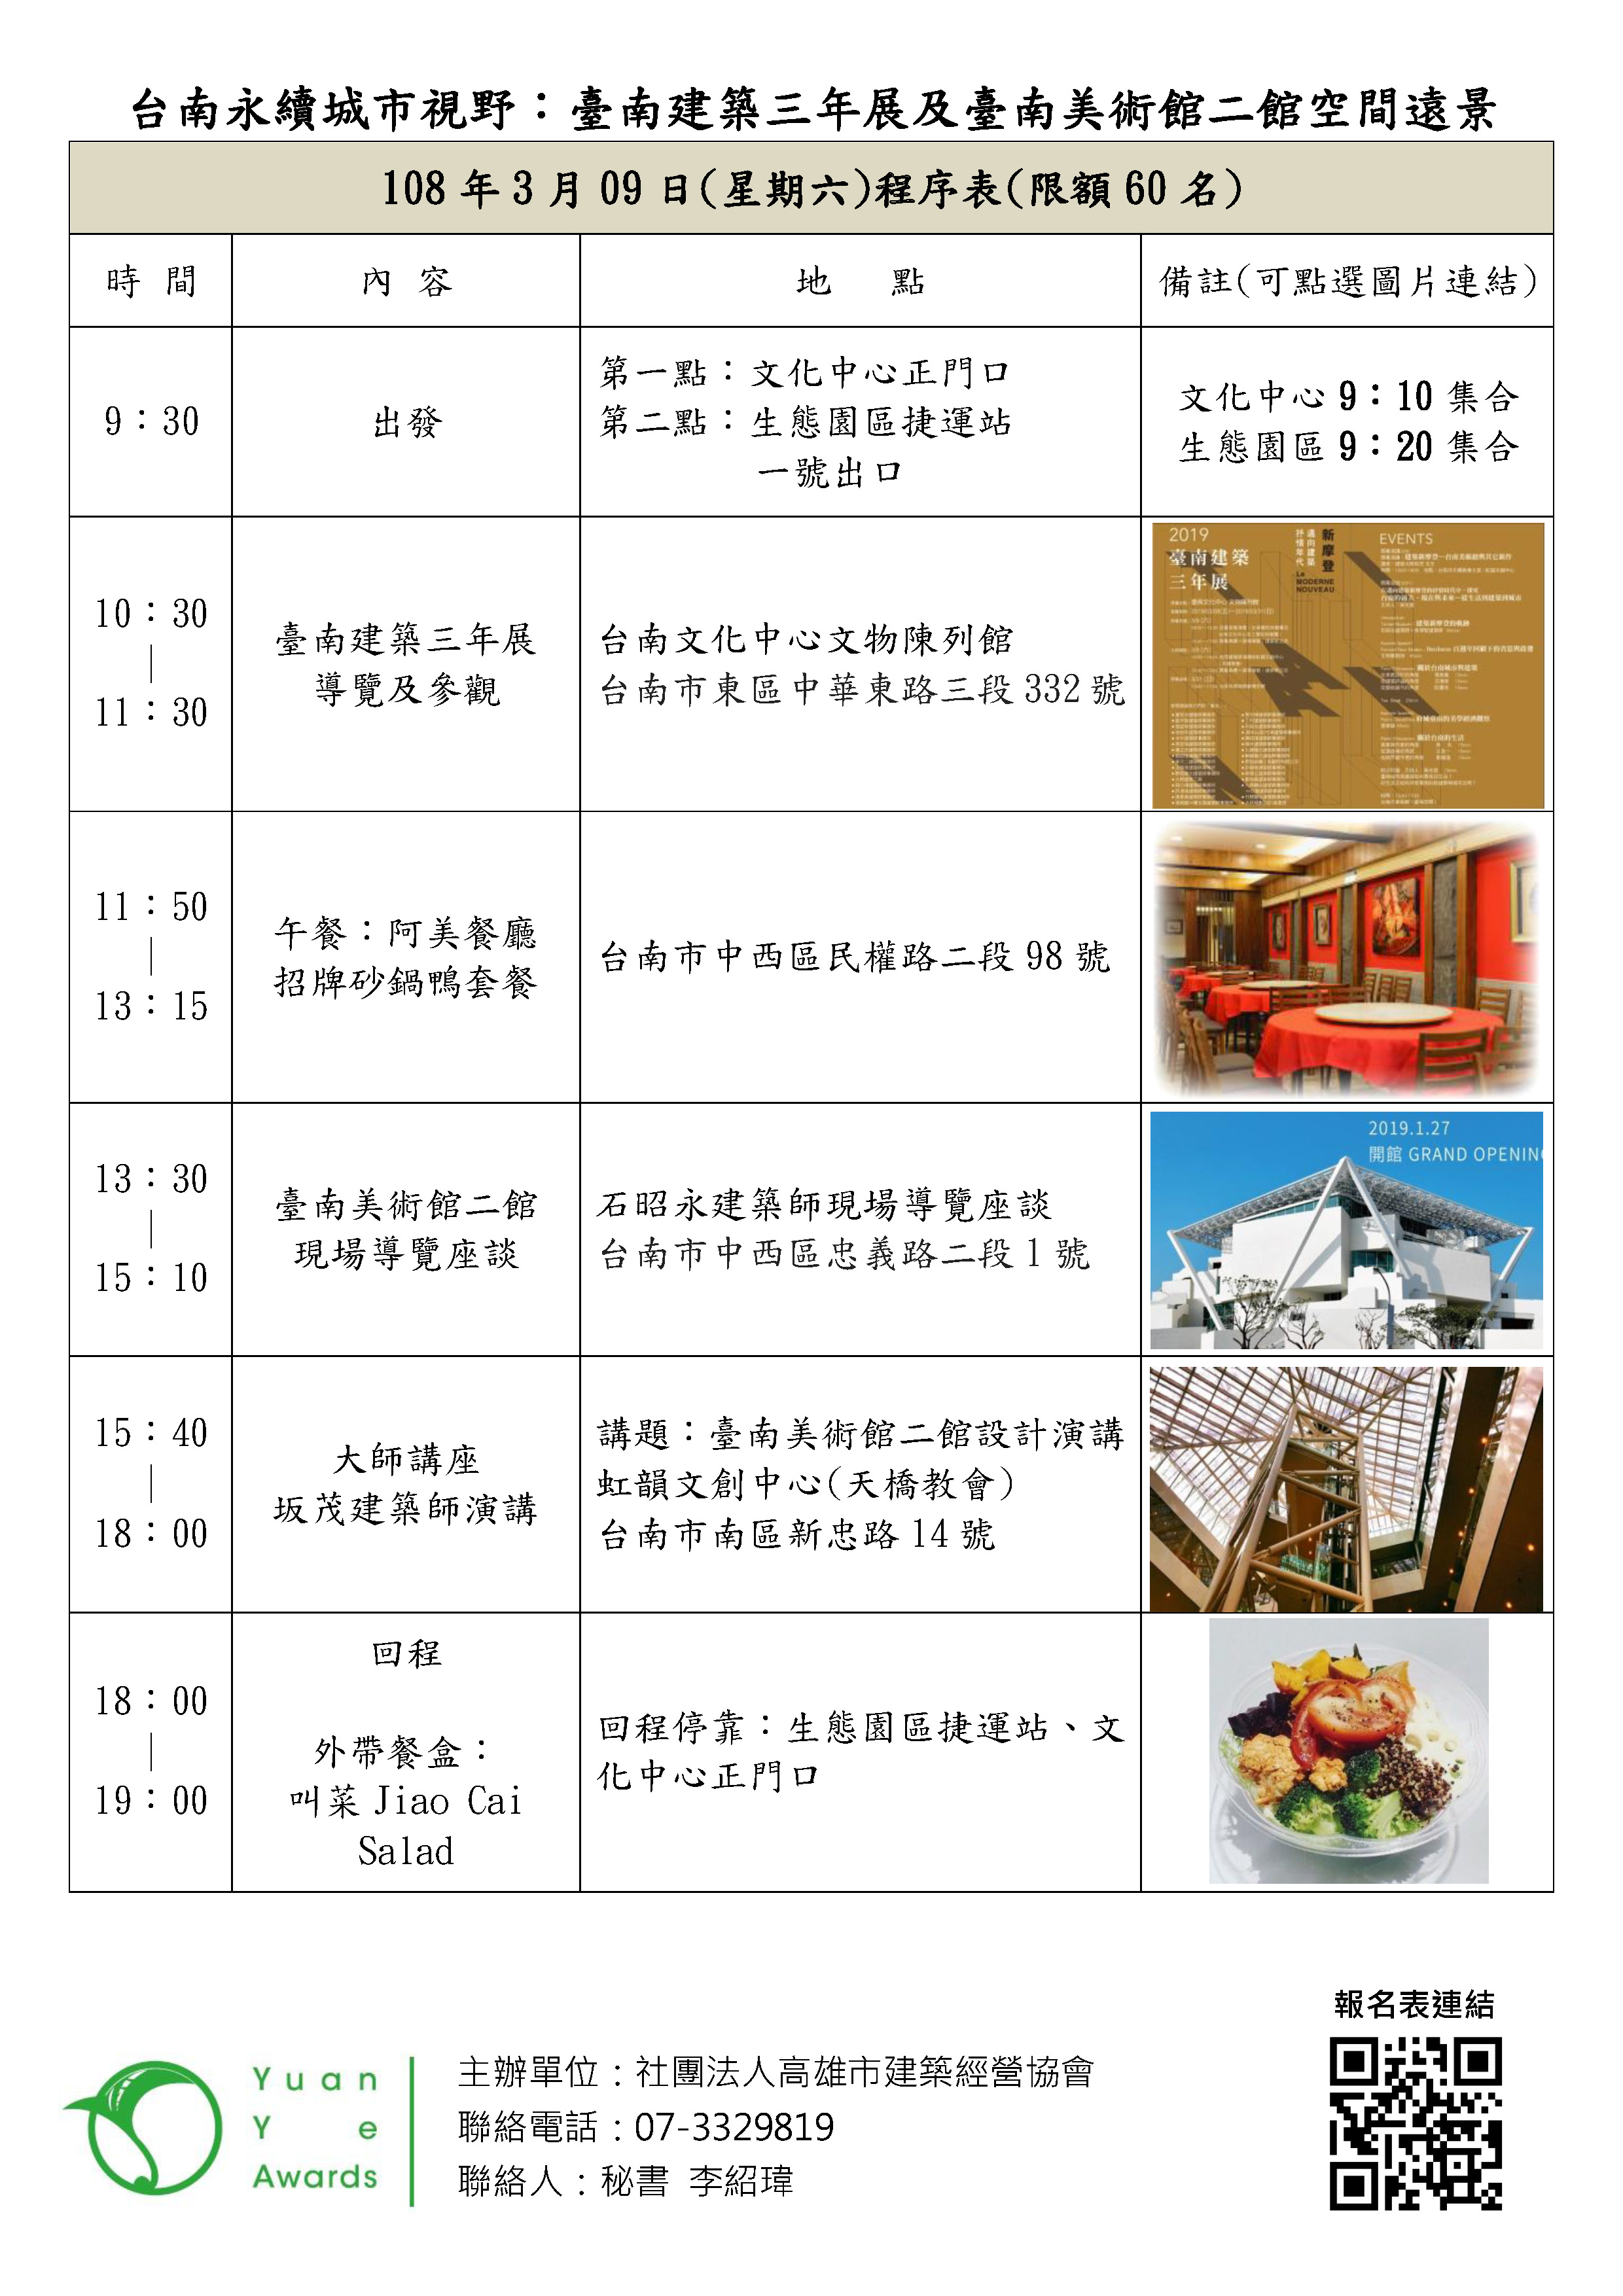 2019年建築園冶獎座談會(一)發文_頁面_4.jpg